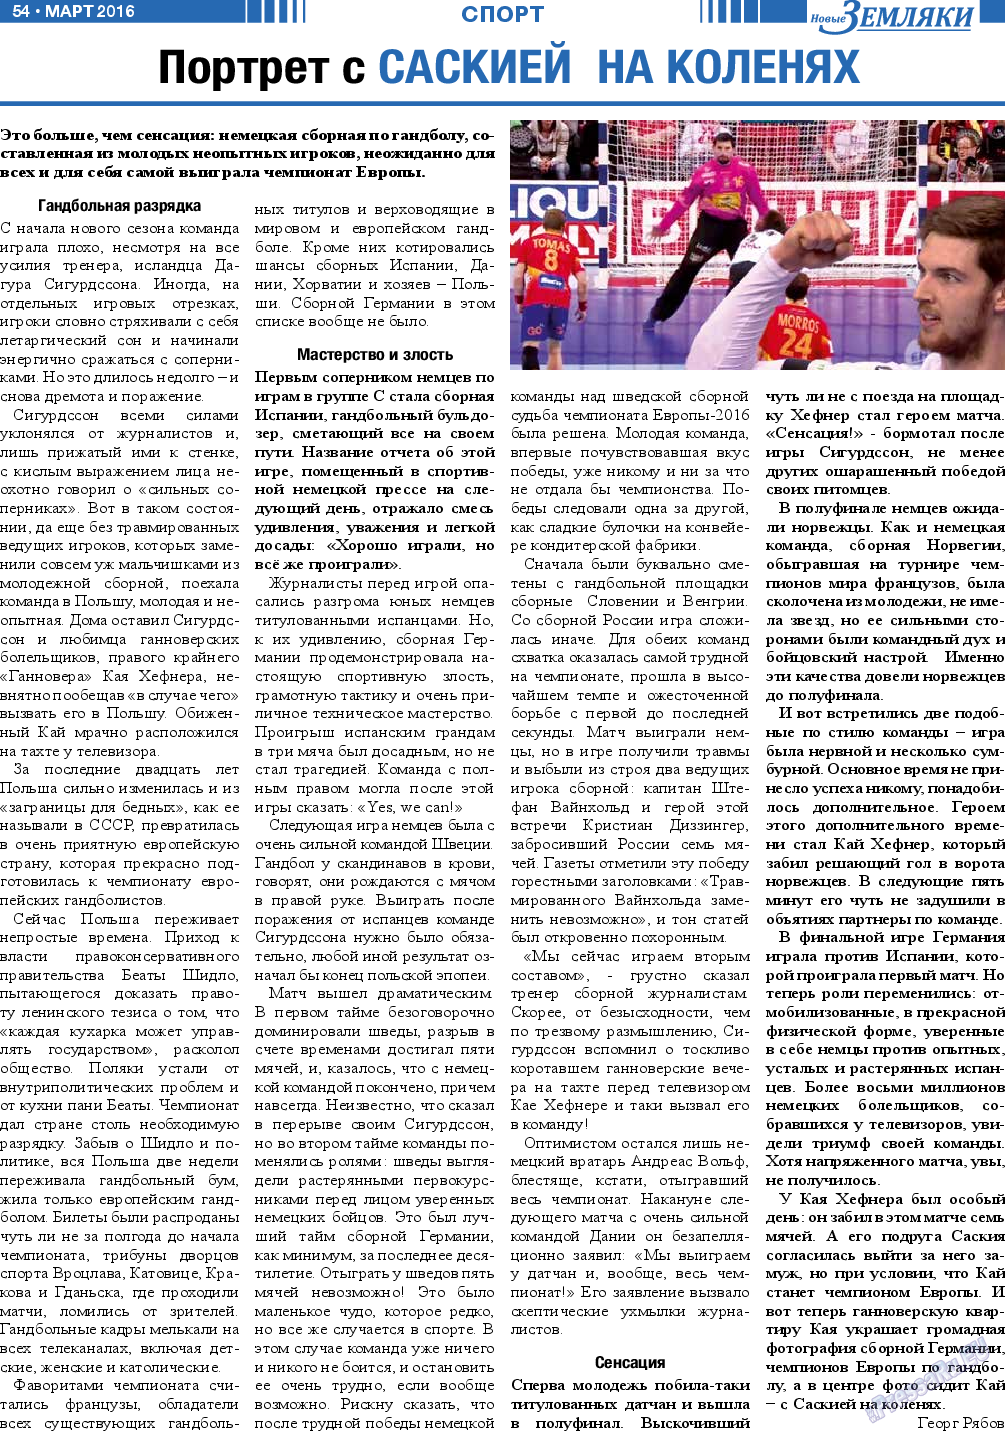 Новые Земляки, газета. 2016 №3 стр.54